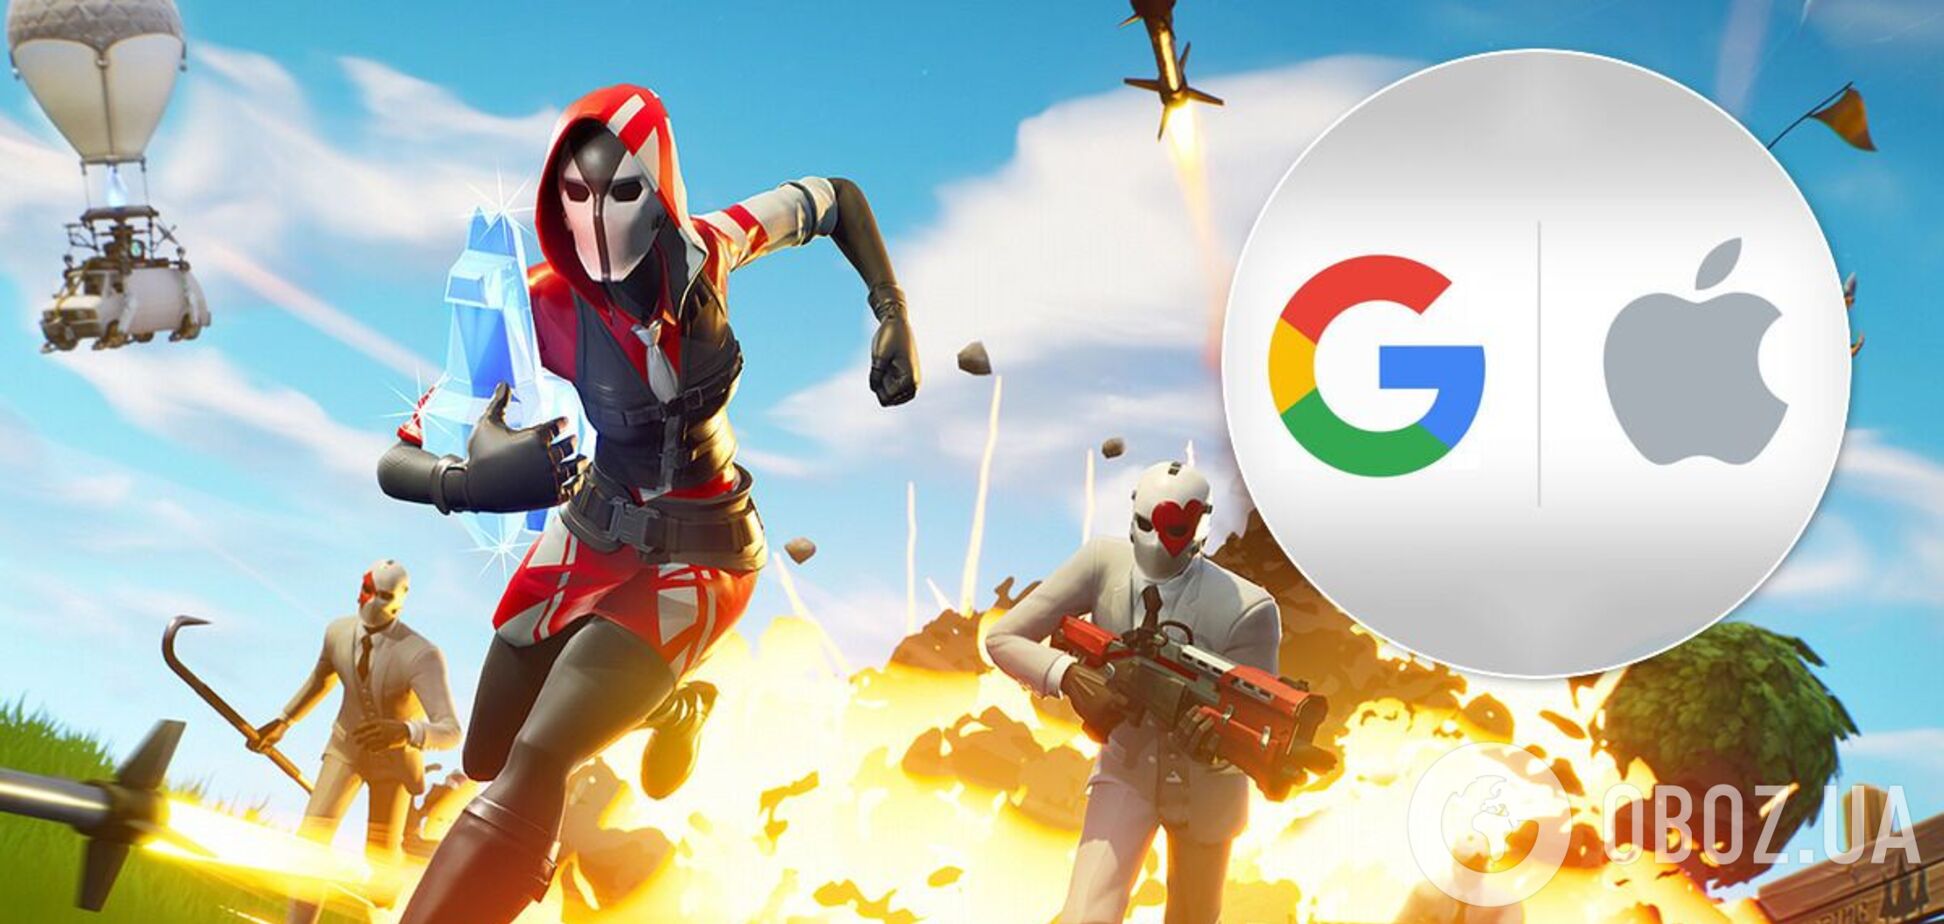 Создатели игры Fortnite подали в суд на Apple и Google, высмеяв корпорации в ролике